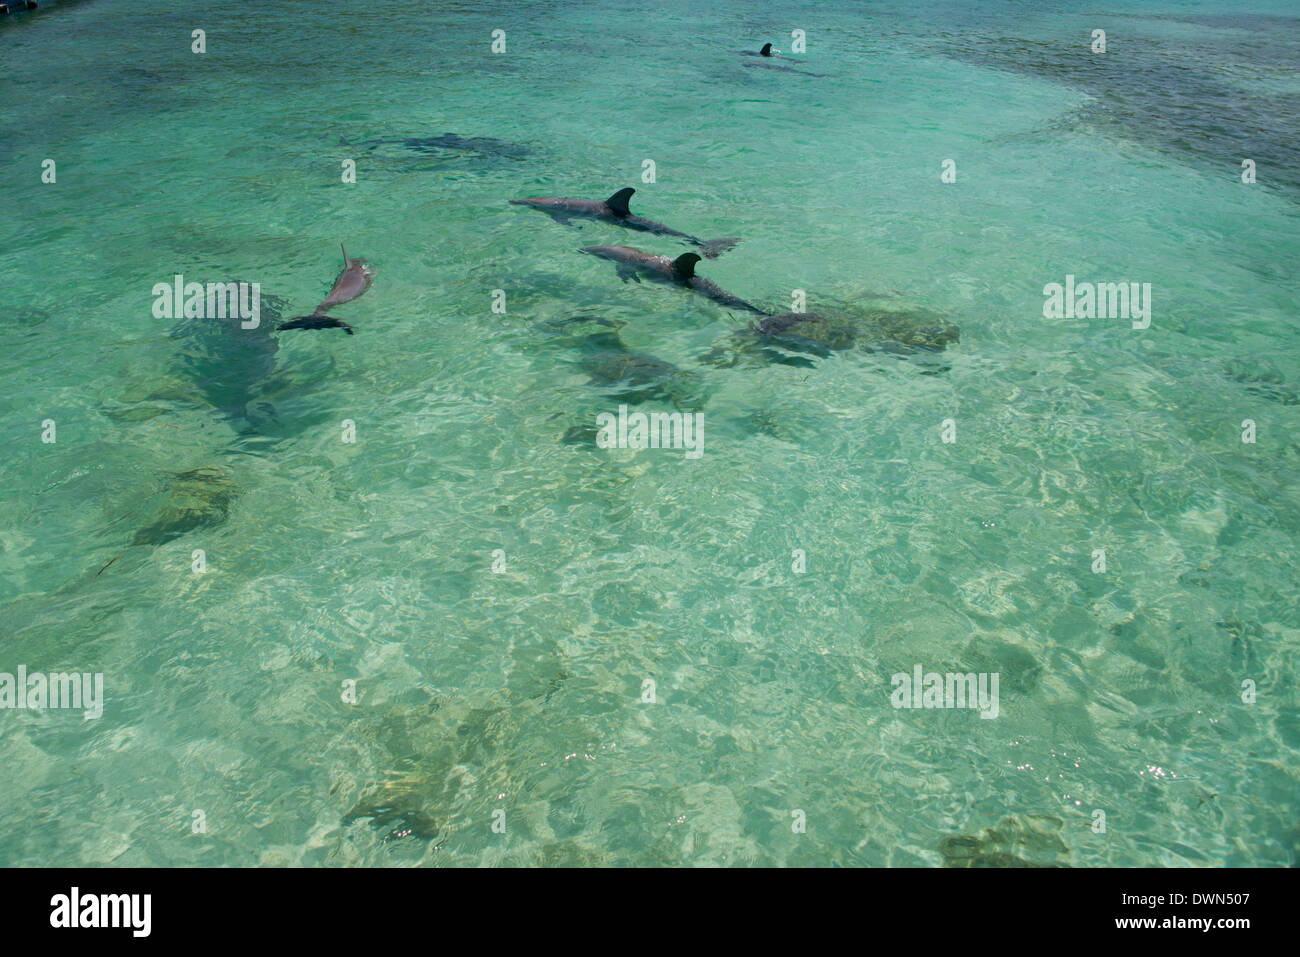 Honduras, Islas de la Bahía de Honduras, Roatán. Anthony's Key, pod de delfines nariz de botella (Tursiops truncatus) aka marsopas. Foto de stock